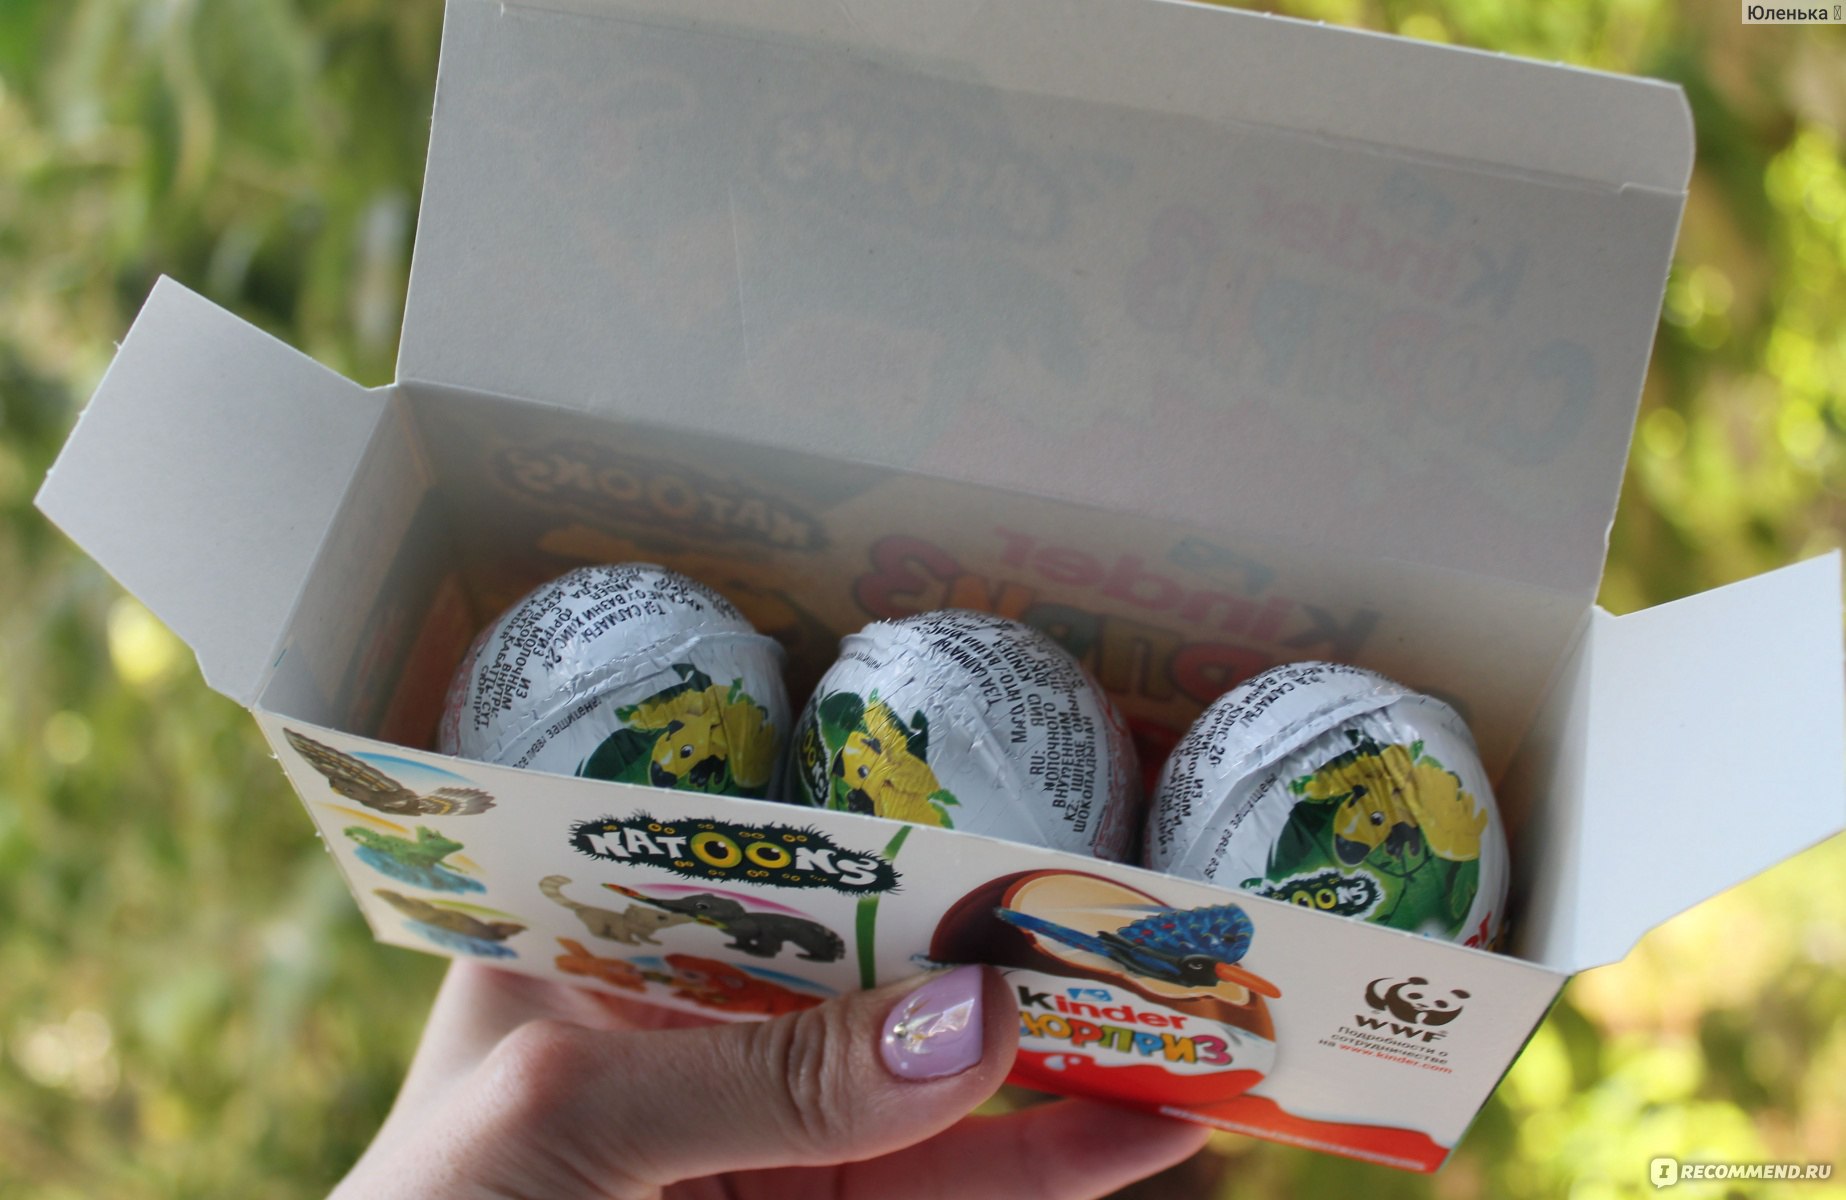 Шоколадное яйцо с сюрпризом FERRERO Kinder сюрприз Natoons